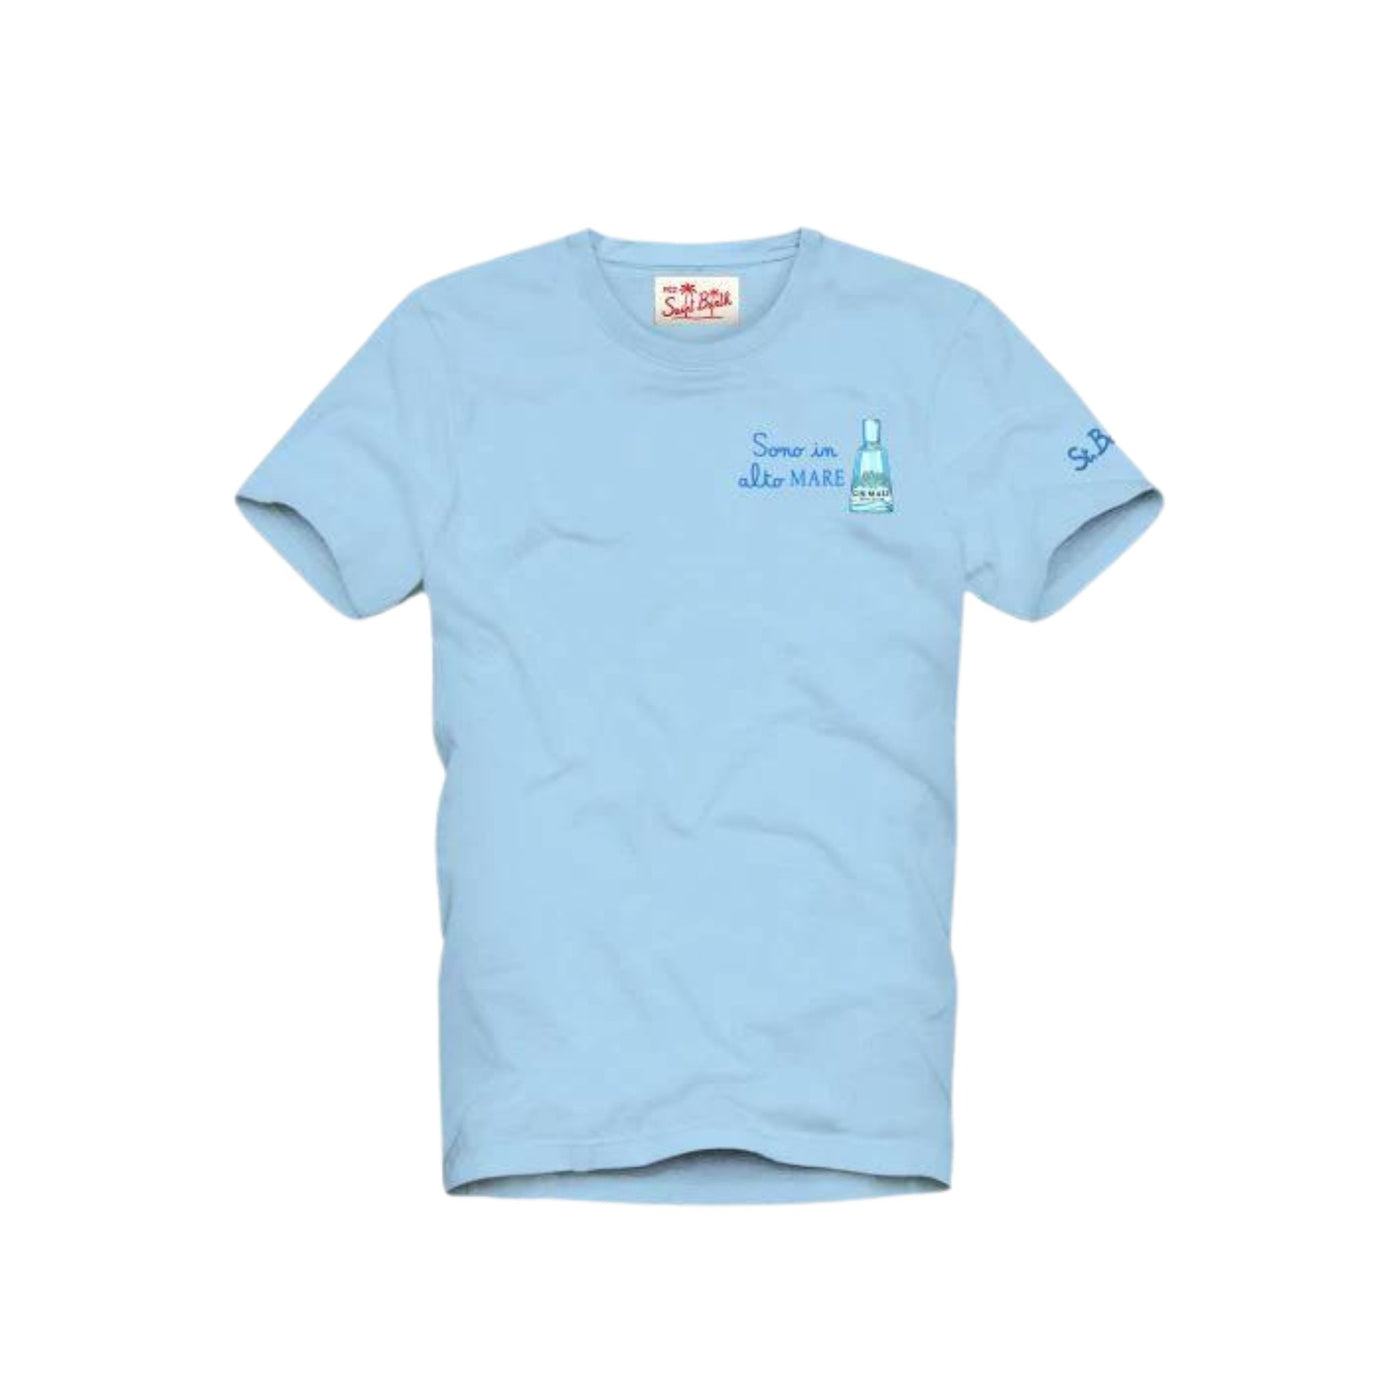 T-shirt Uomo Celeste realizzata in cotone con ricamo sul petto e scollatura girocollo